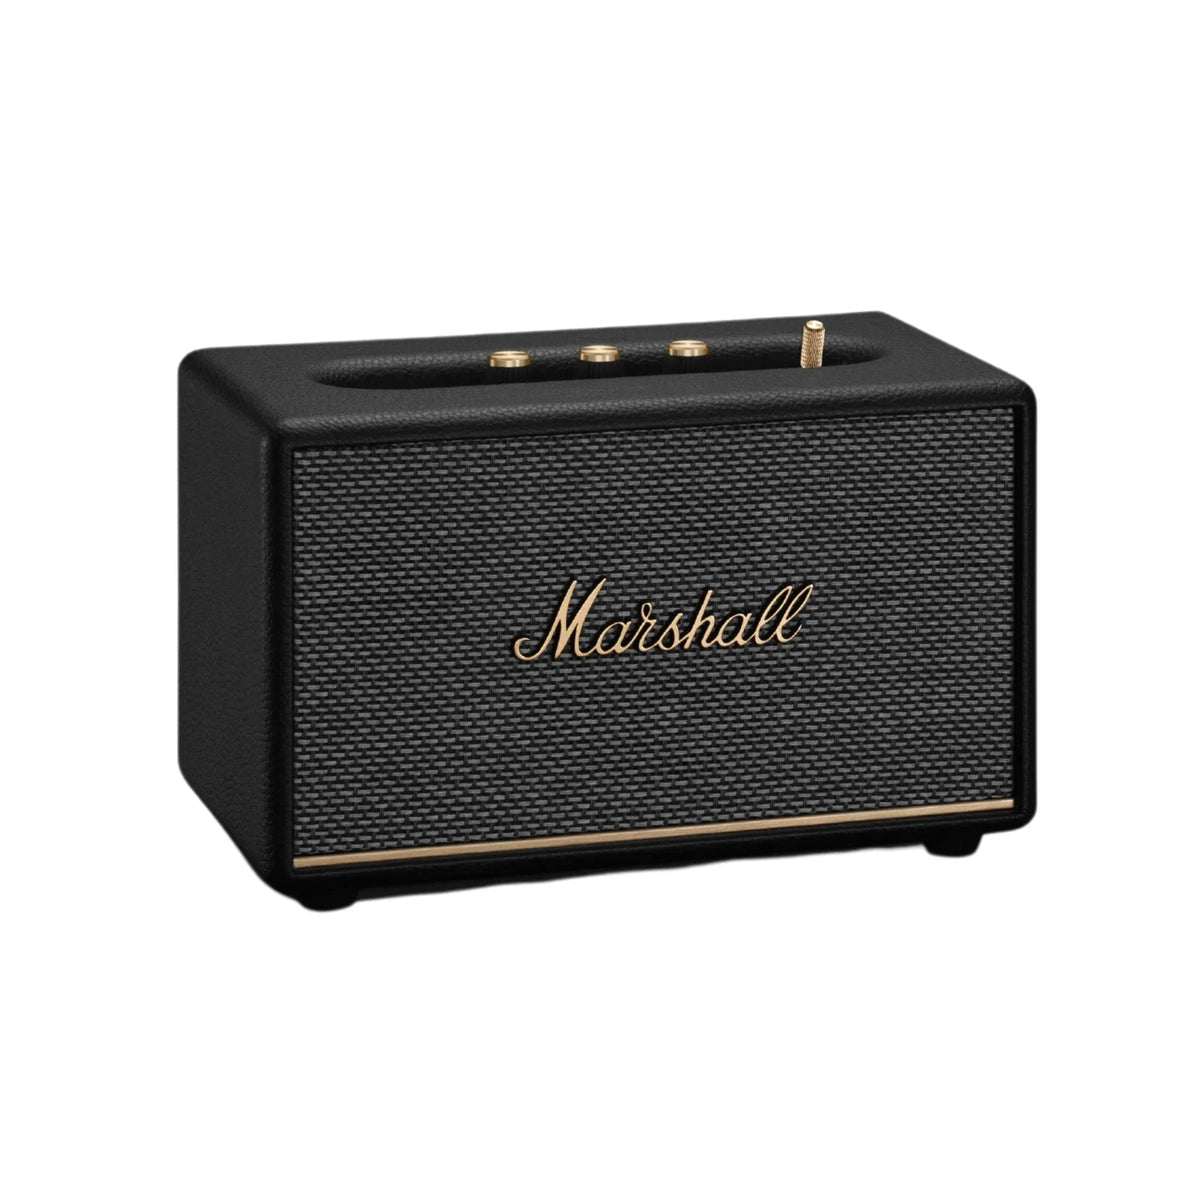 Marshall Acton III Bluetooth Speaker - Black